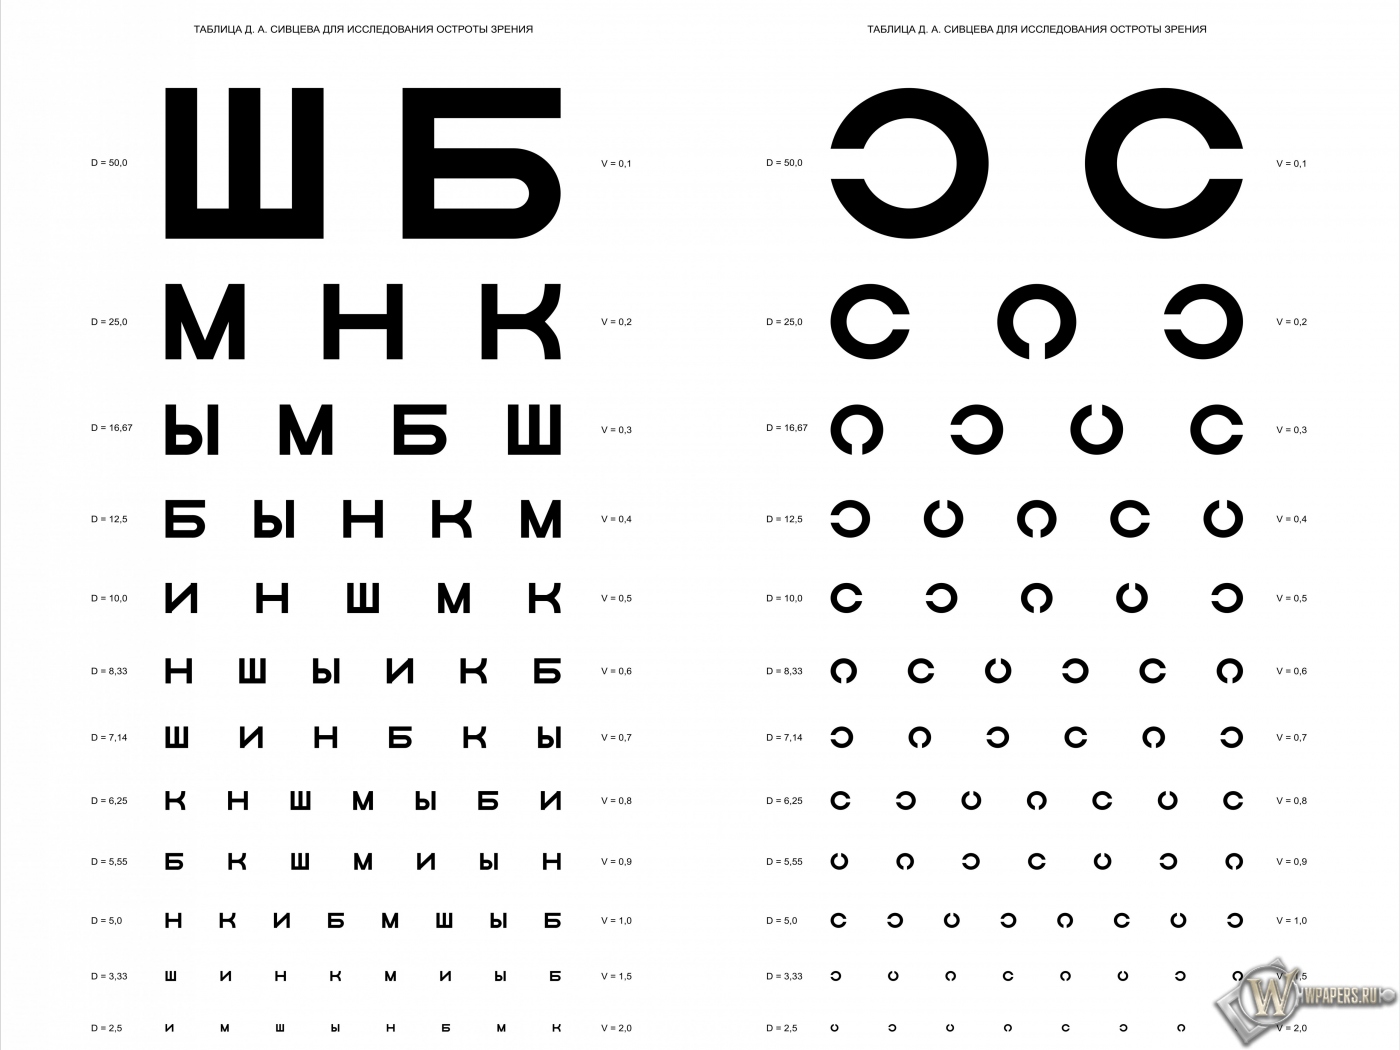 Таблица Д.А. Сивцева для проверки зрения 1400x1050